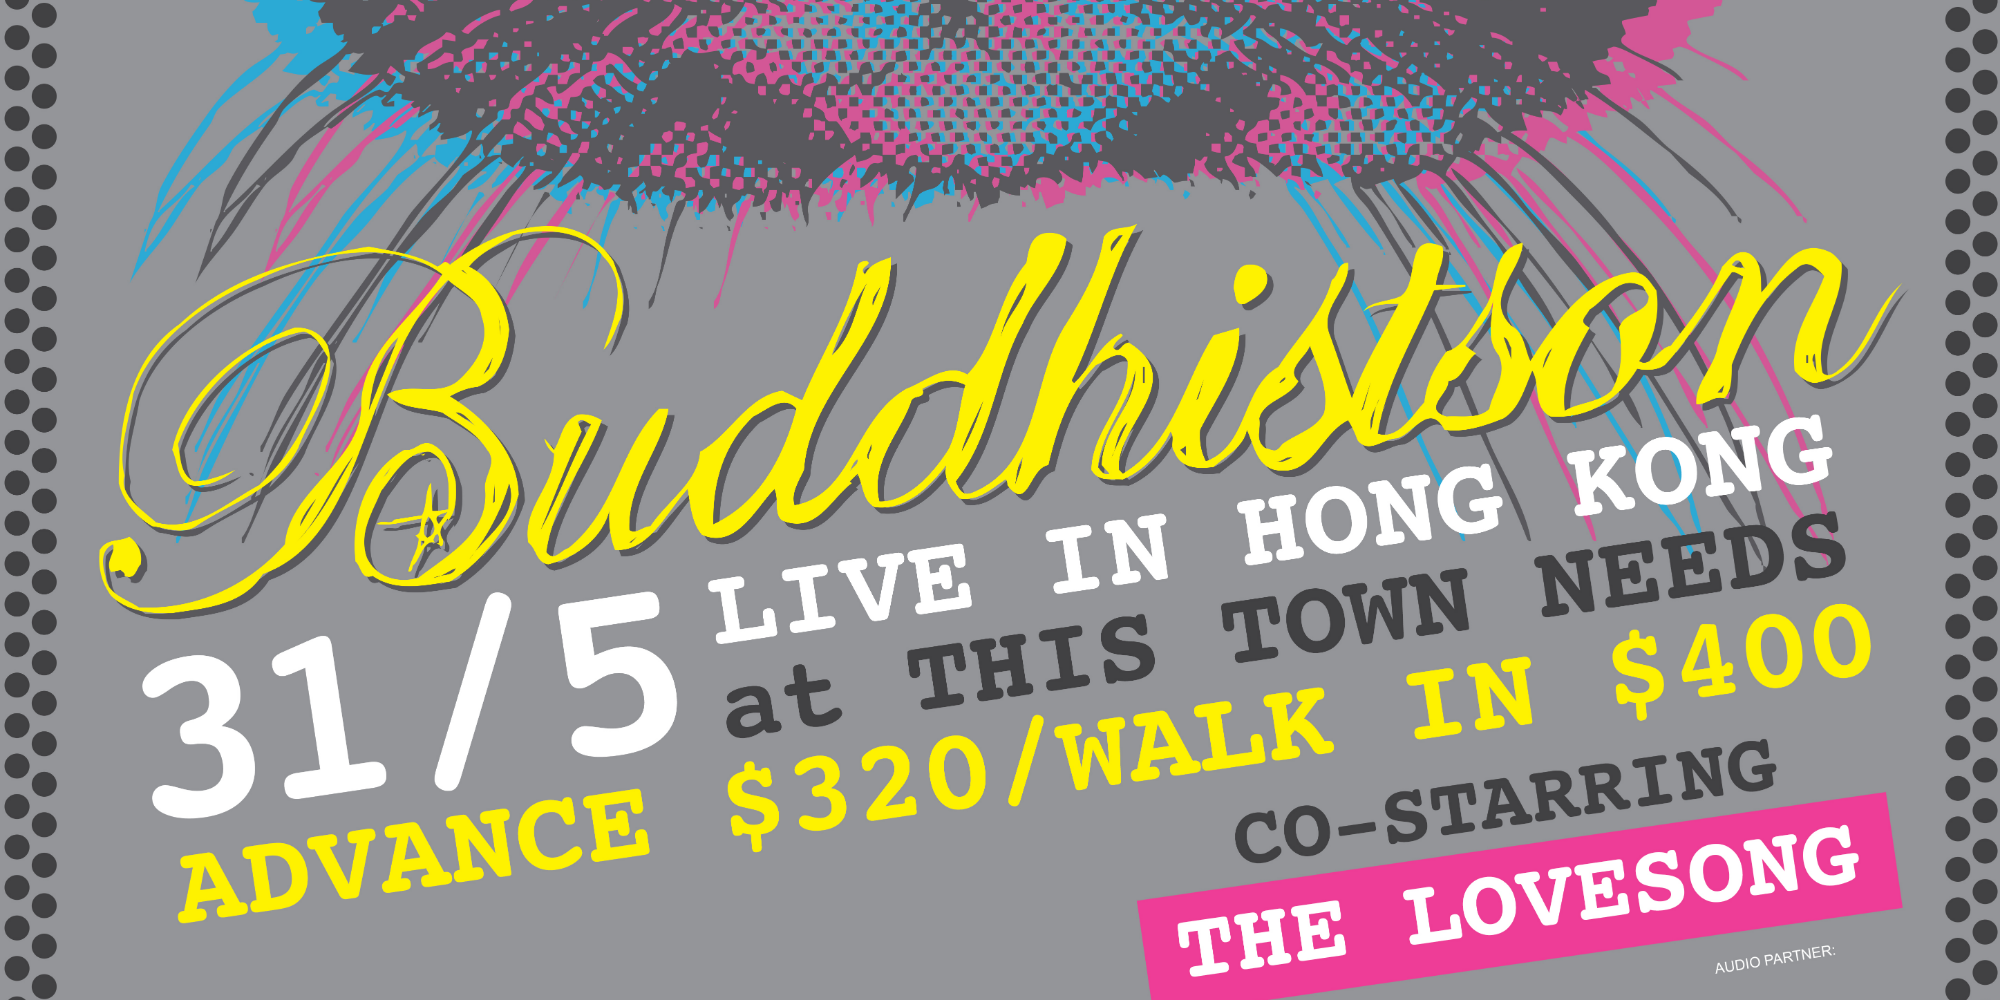 Hidden Agenda Presents: BUDDHISTSON Live in Hong Kong